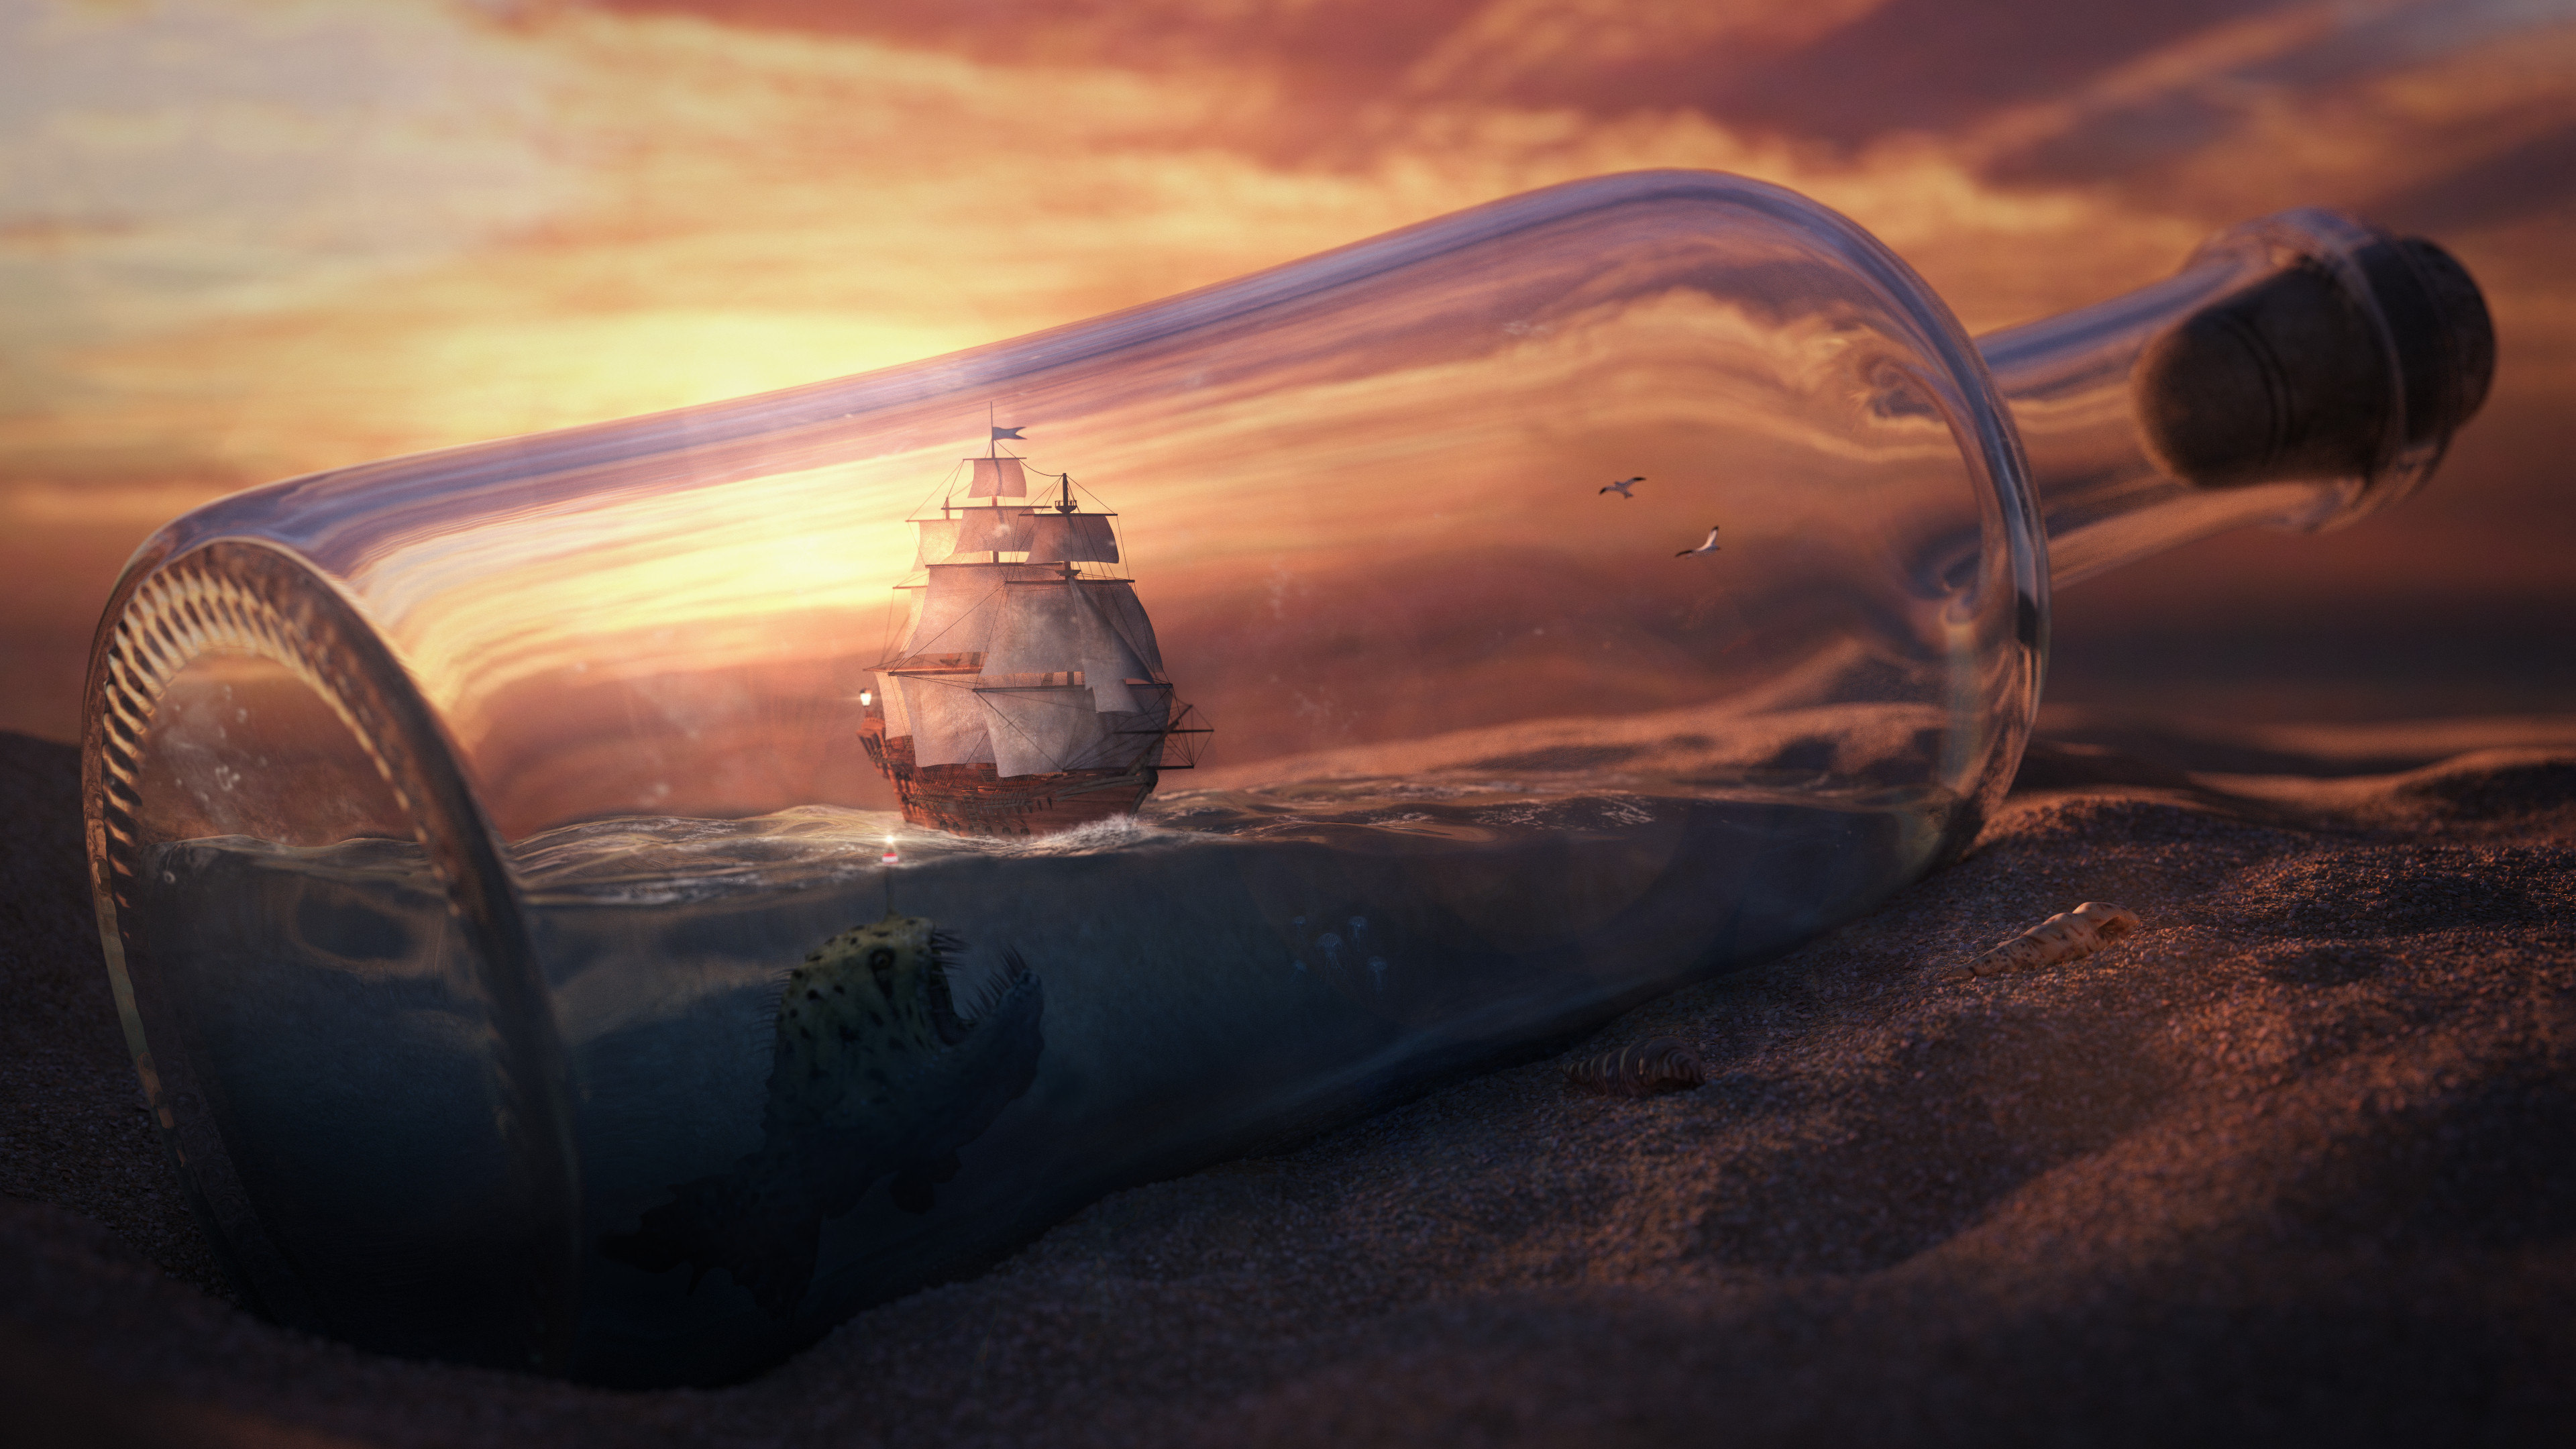 Boat in the bottle